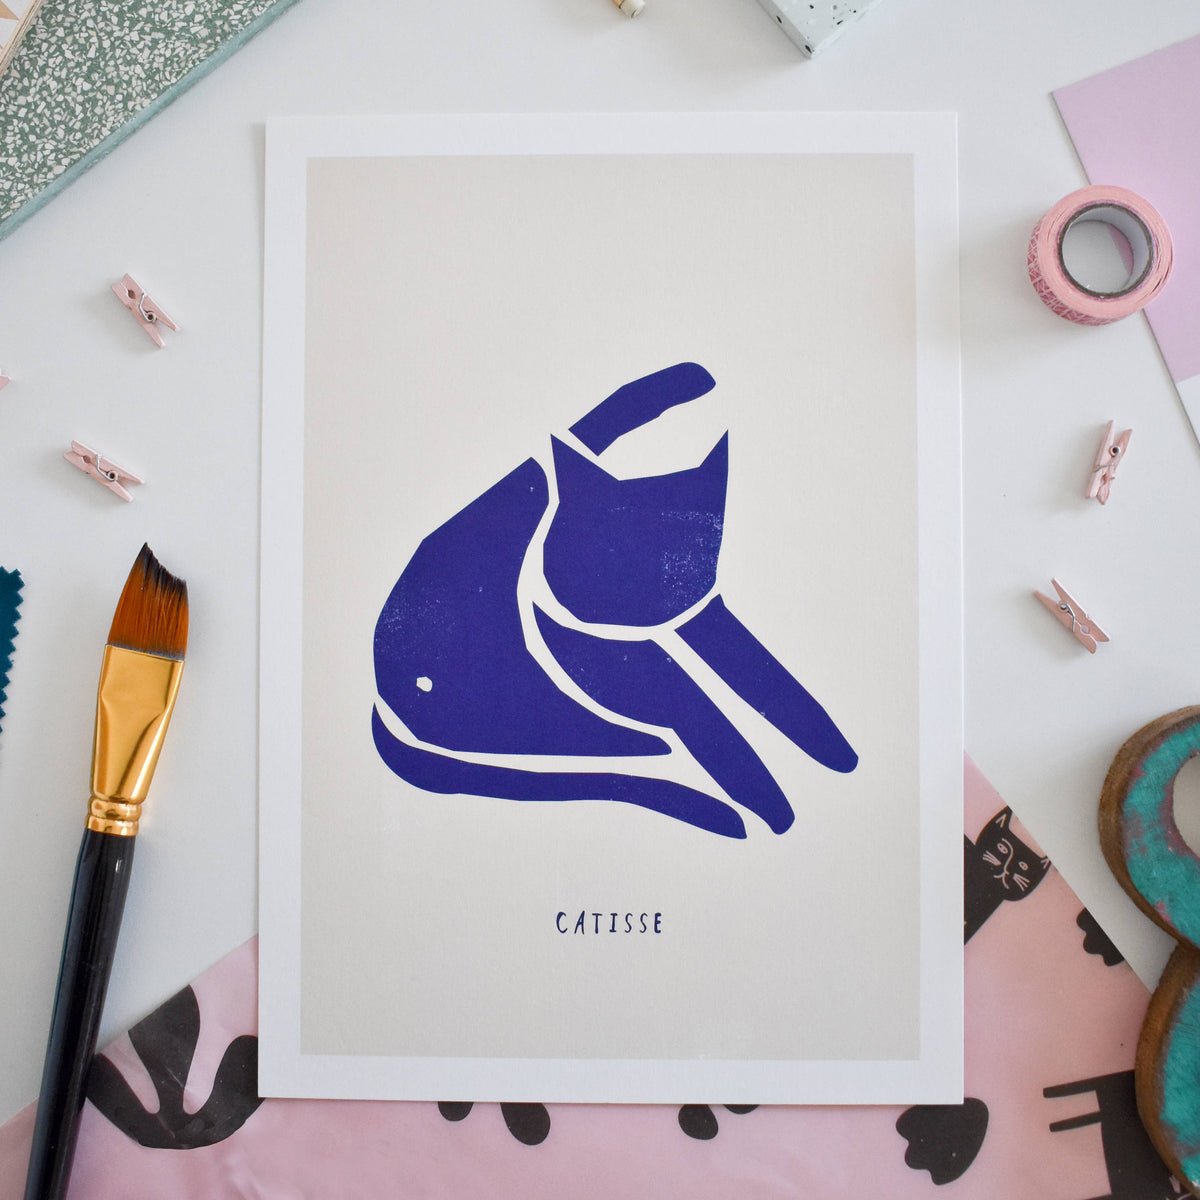 Niaski Catisse 'Blue Cat' Print